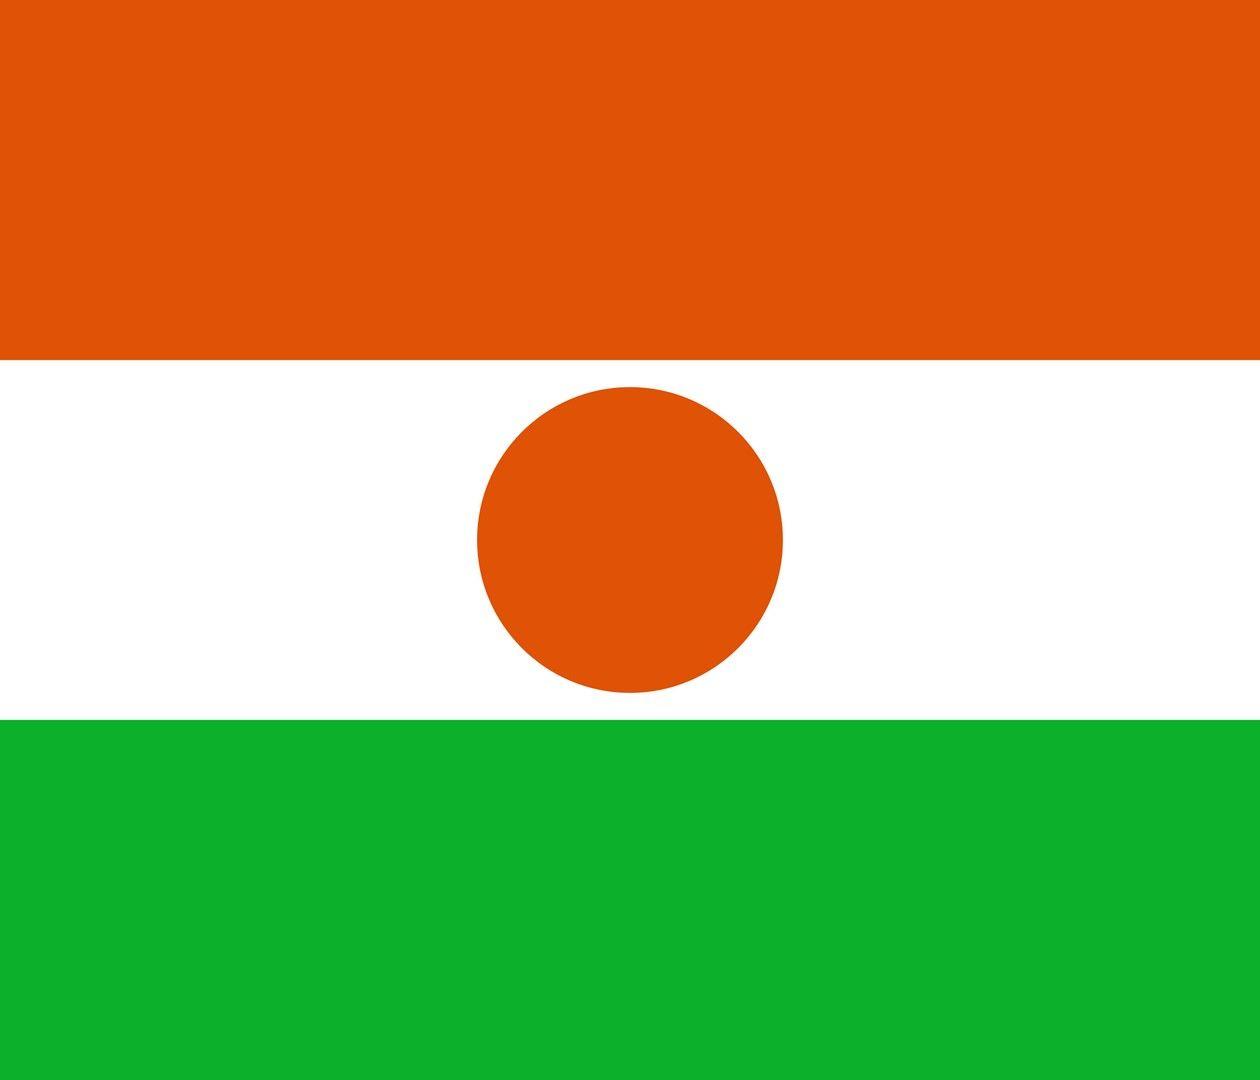 Niger Flag wallpaper. Flags wallpaper. Wallpaper